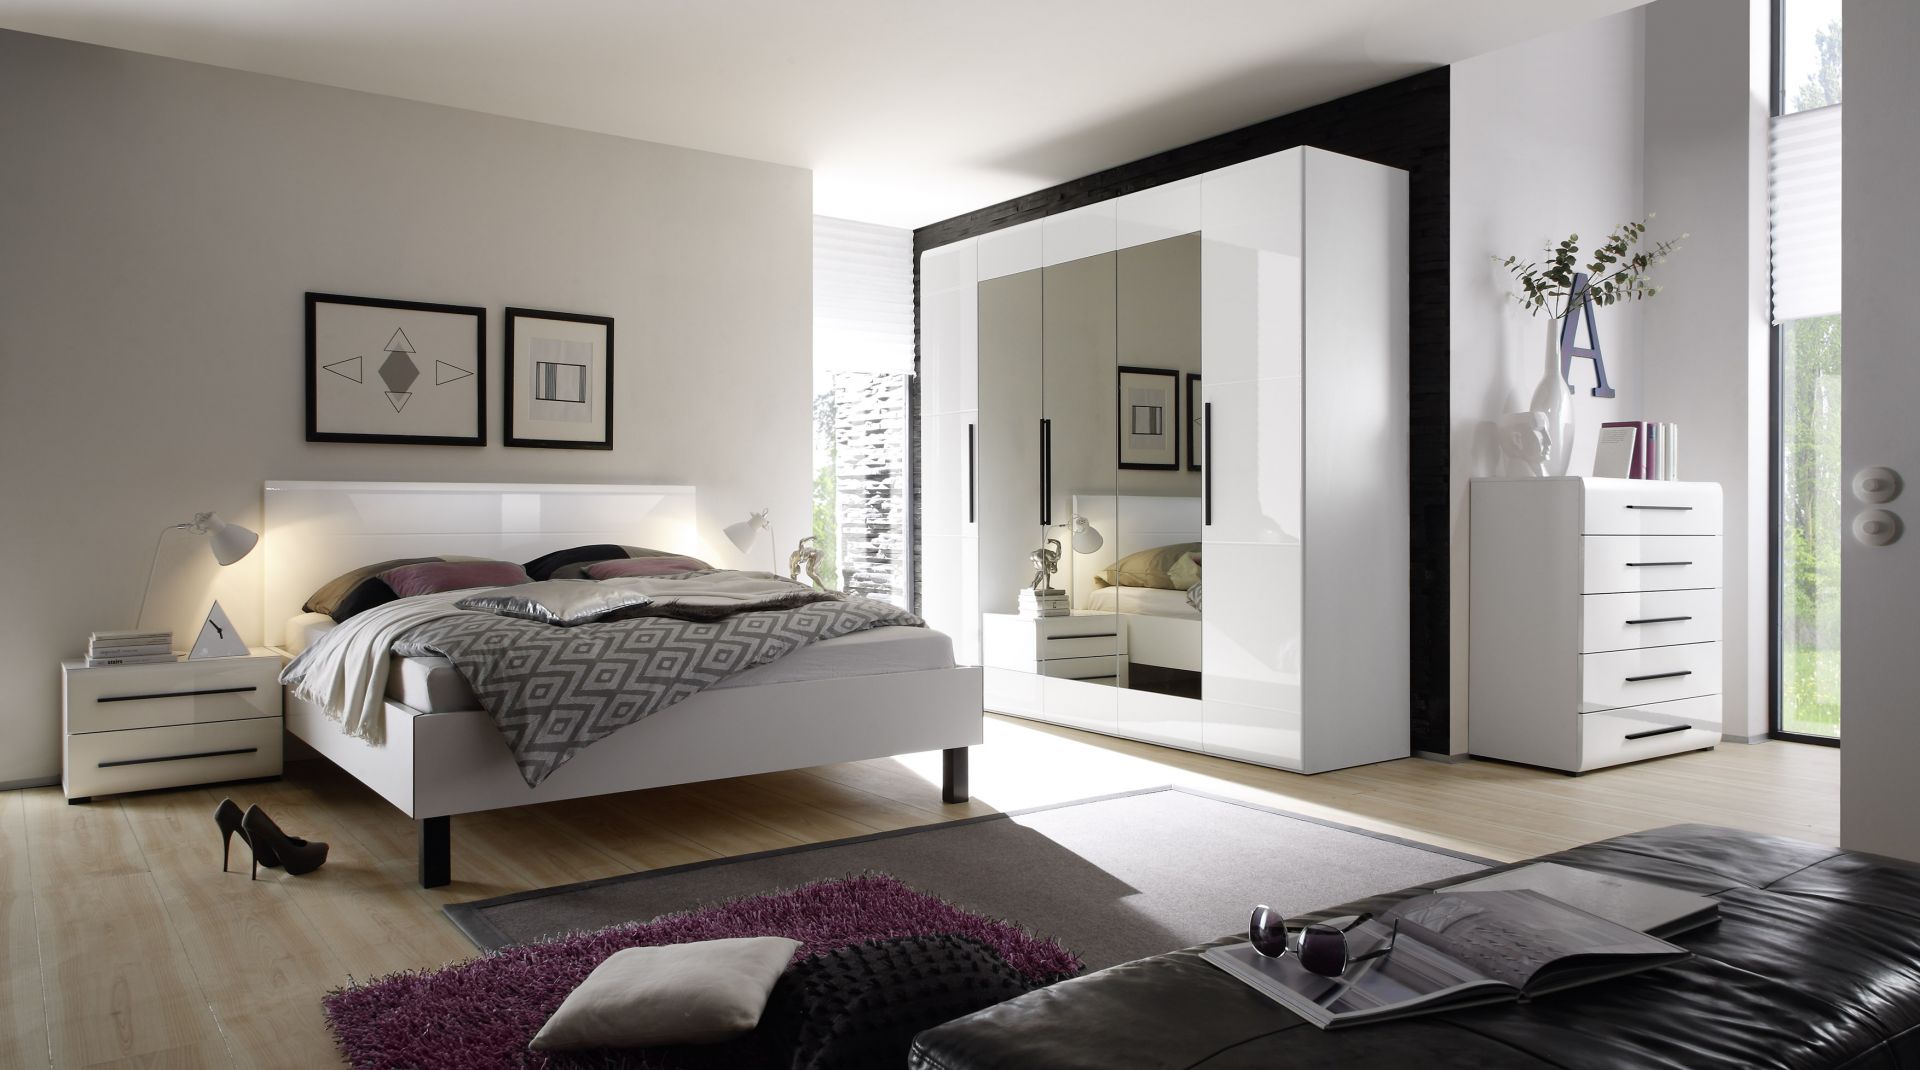 Sypialnia Harmony to biel w połysku połączona z lustrzanymi taflami. Świetnie sprawdzi się niewielkim pomieszczeniu. Fot. Helvetia Wieruszów 